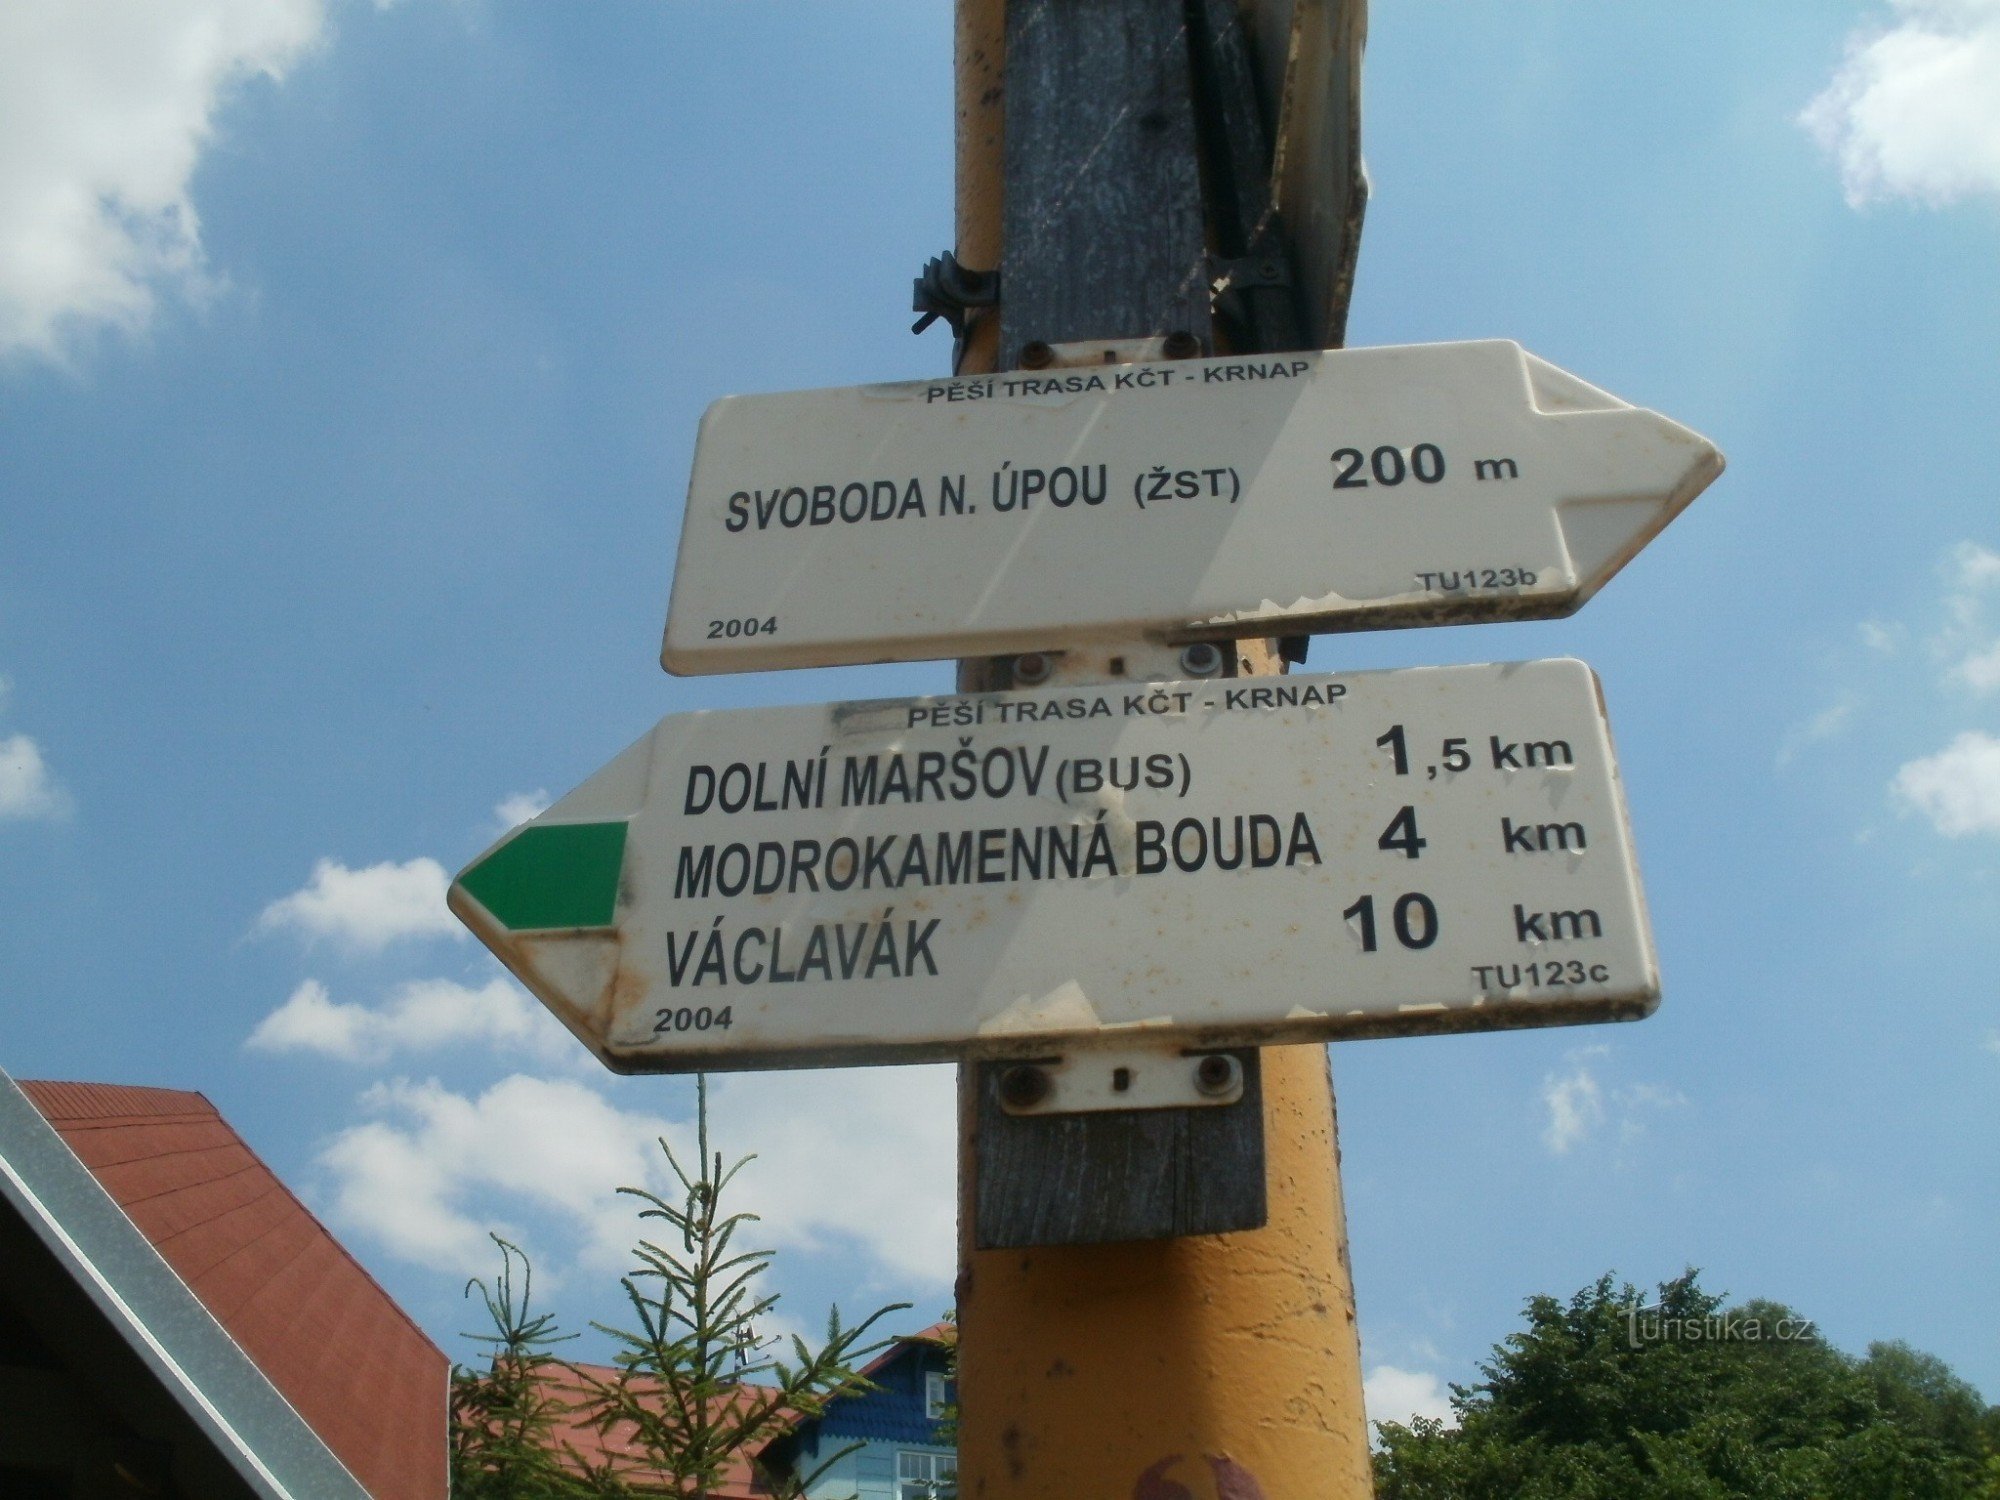 răscruce turistică Svoboda nad Úpou - lângă gara